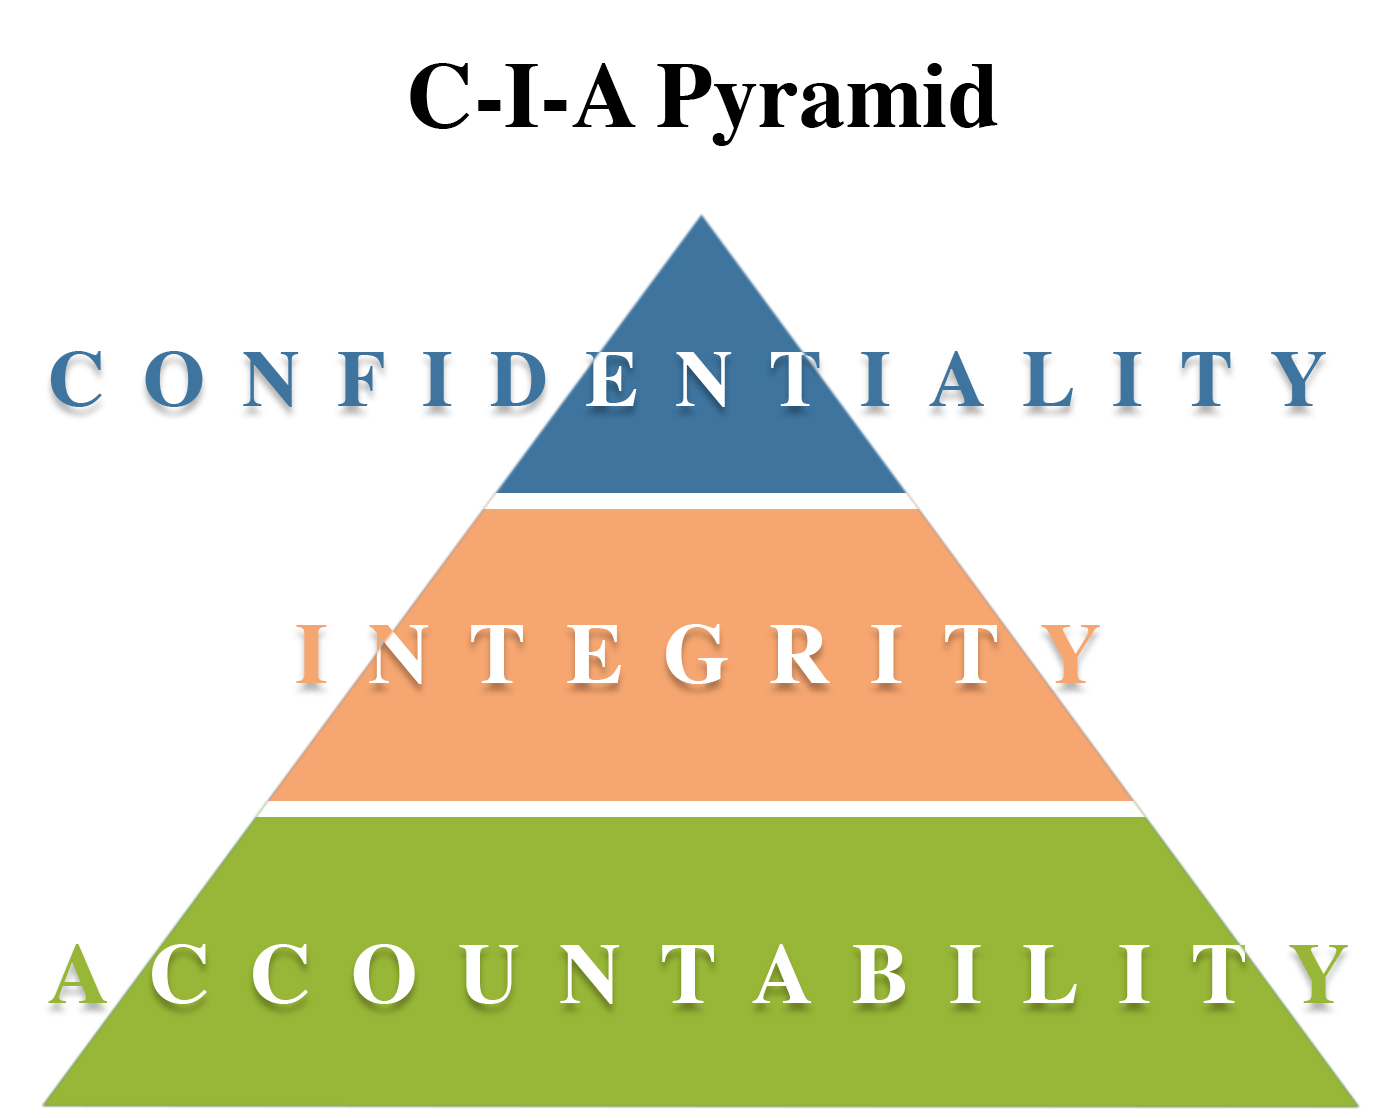 C-I-A Pyramid